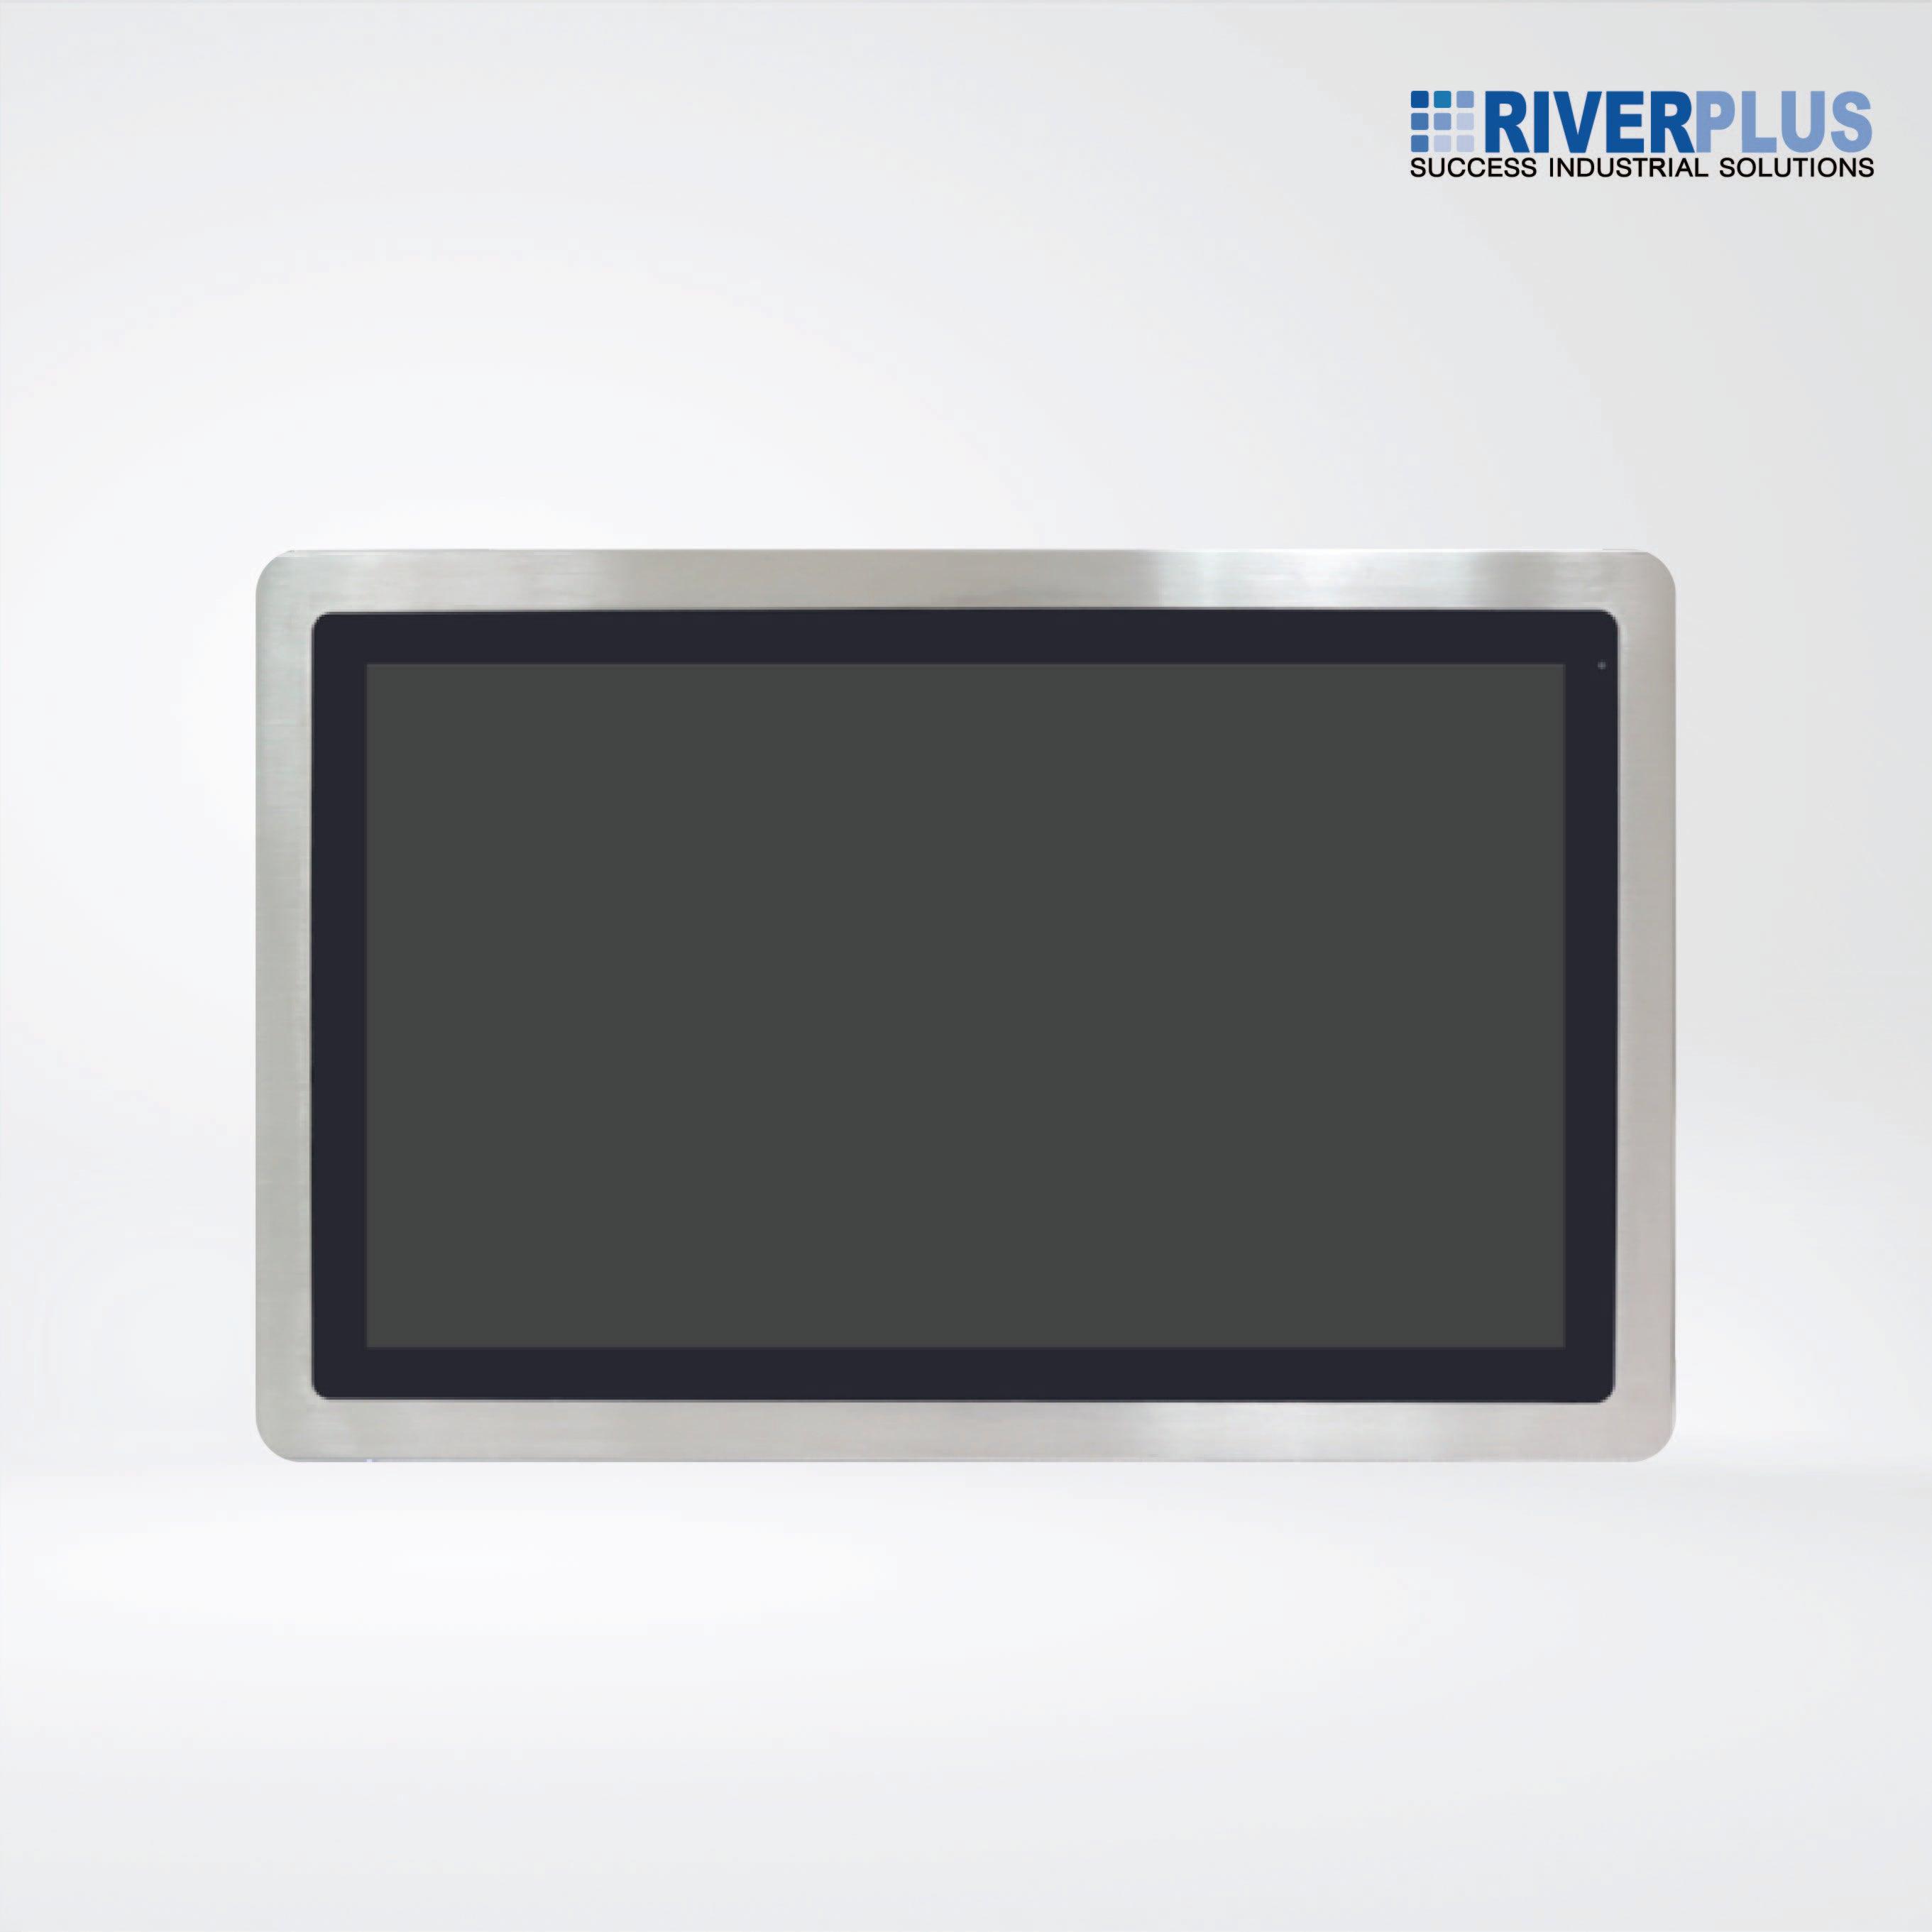 ViTAM-921AP 21.5″ New Gen. IP66/IP69K Stainless Steel Panel PC - Riverplus